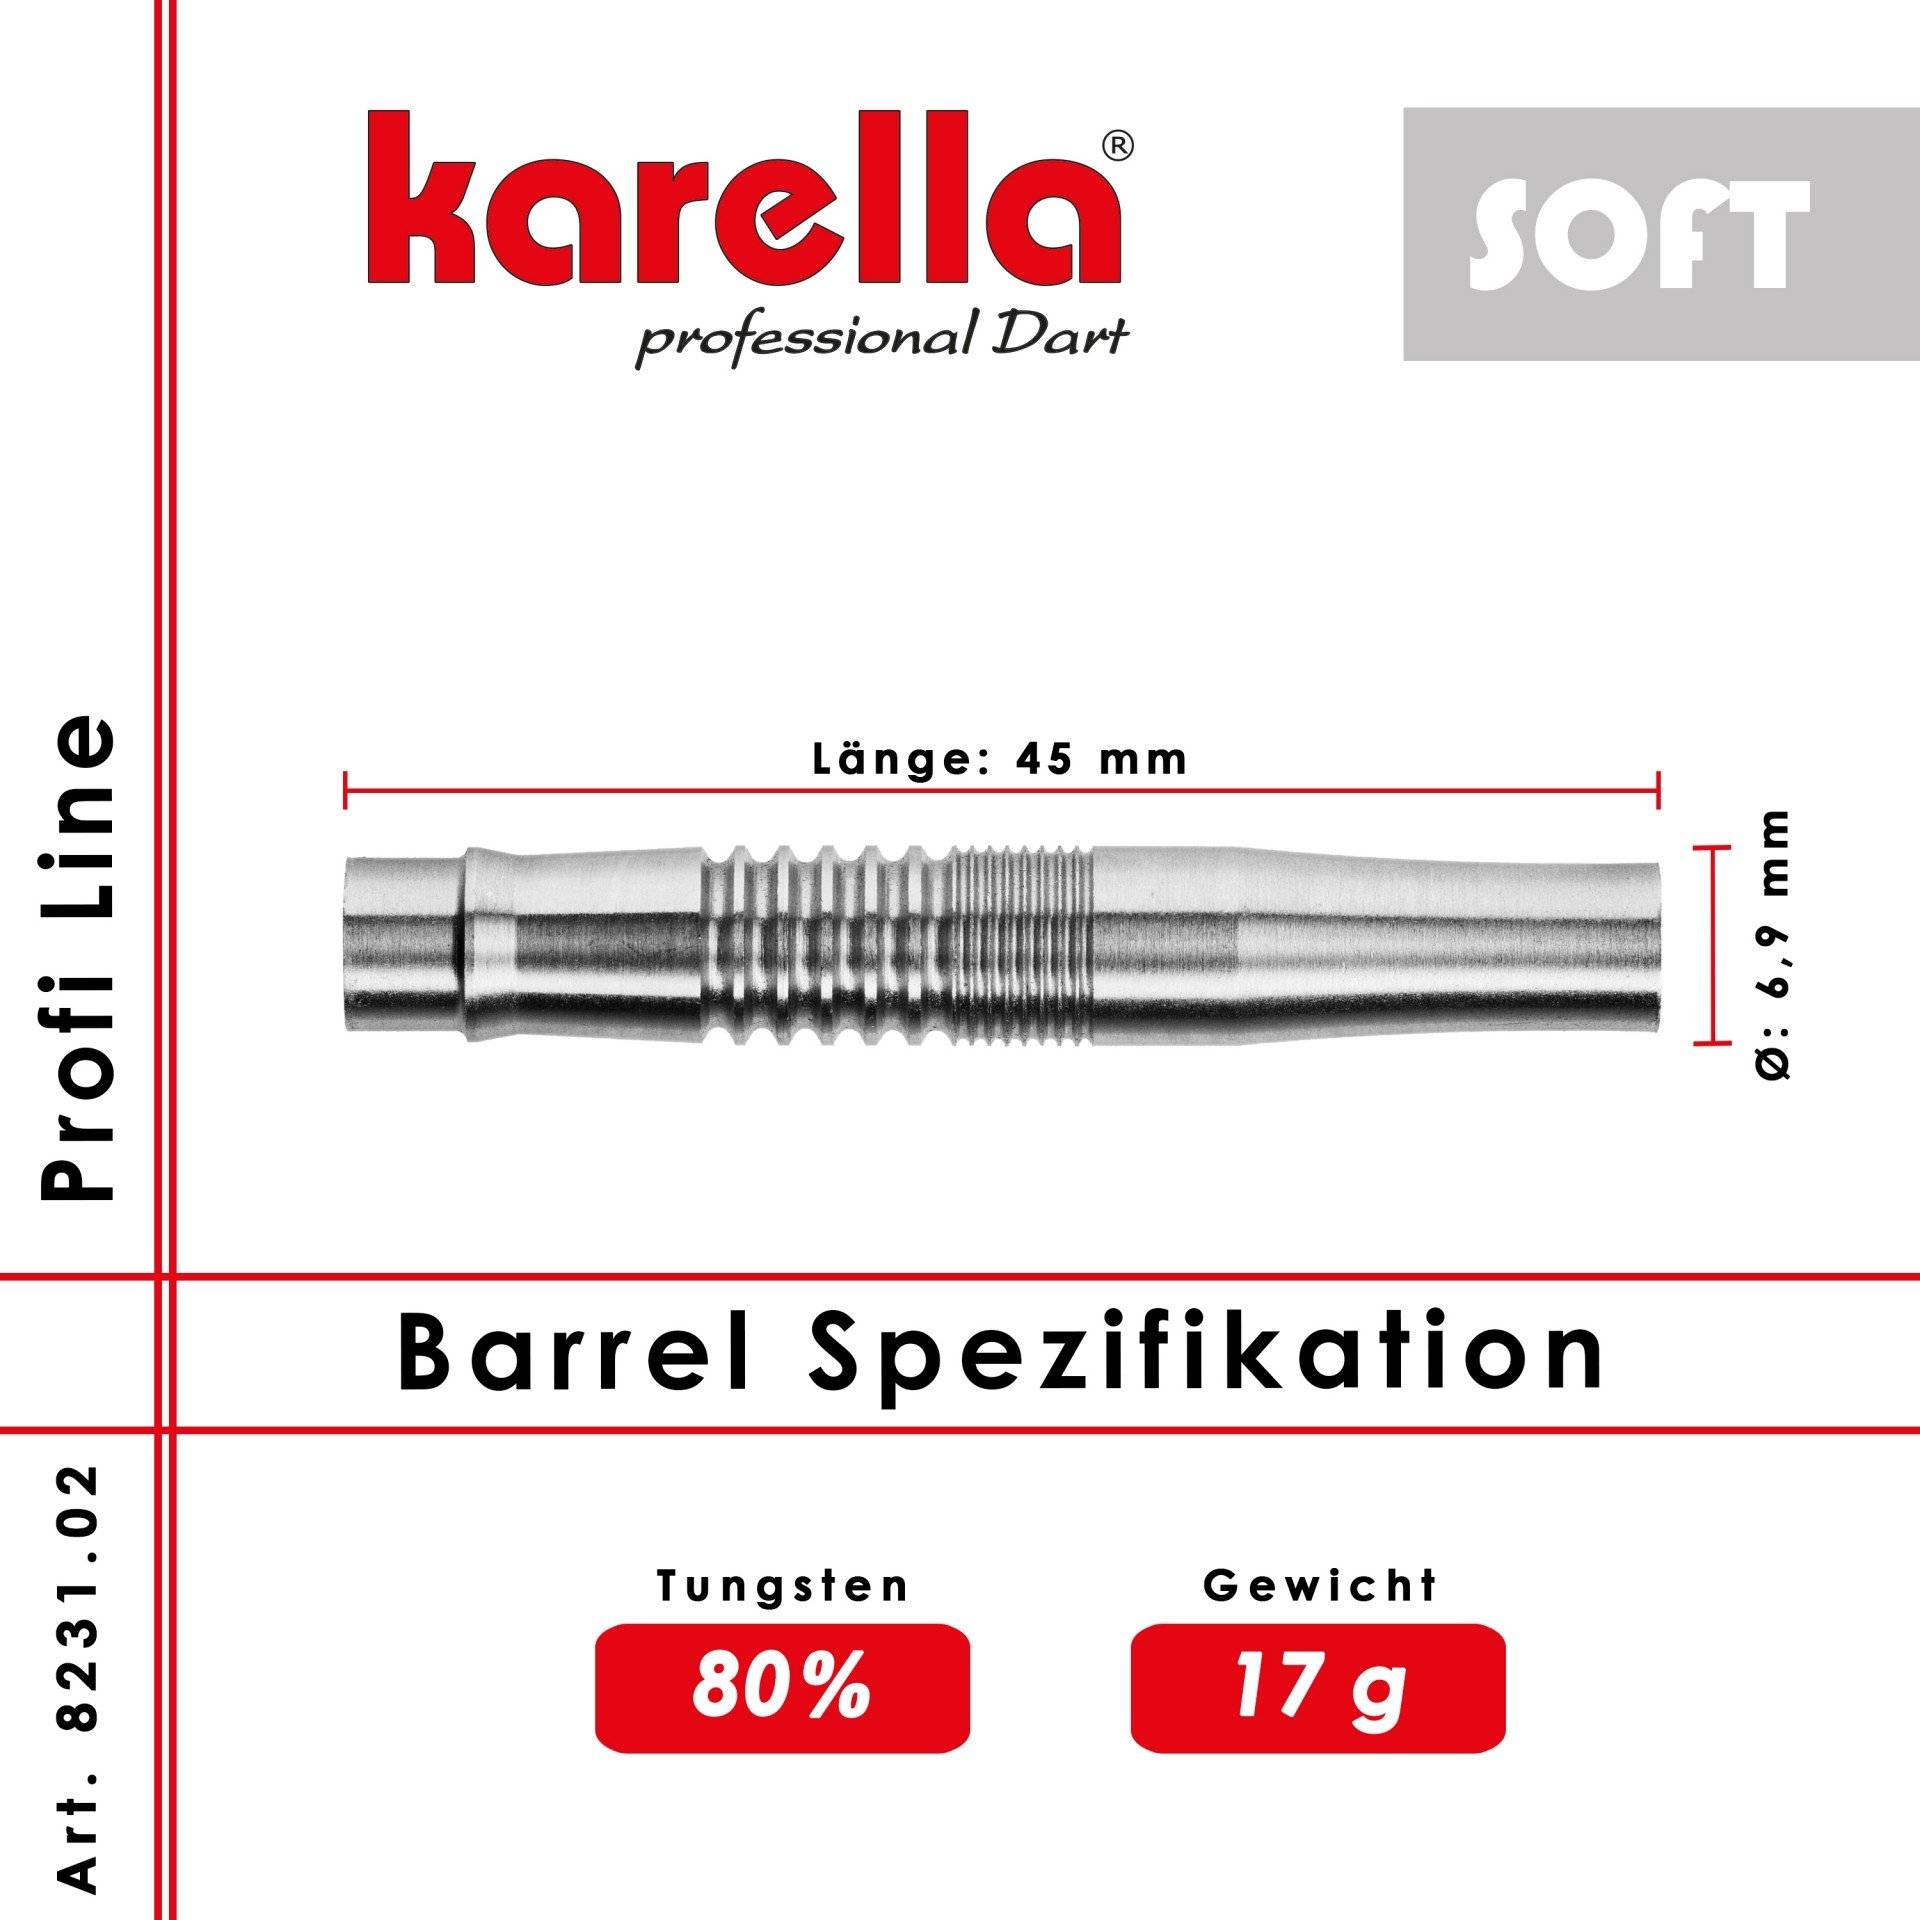 Karella Barrel 80% Tungsten PLS Soft 80-01 20g von Karella